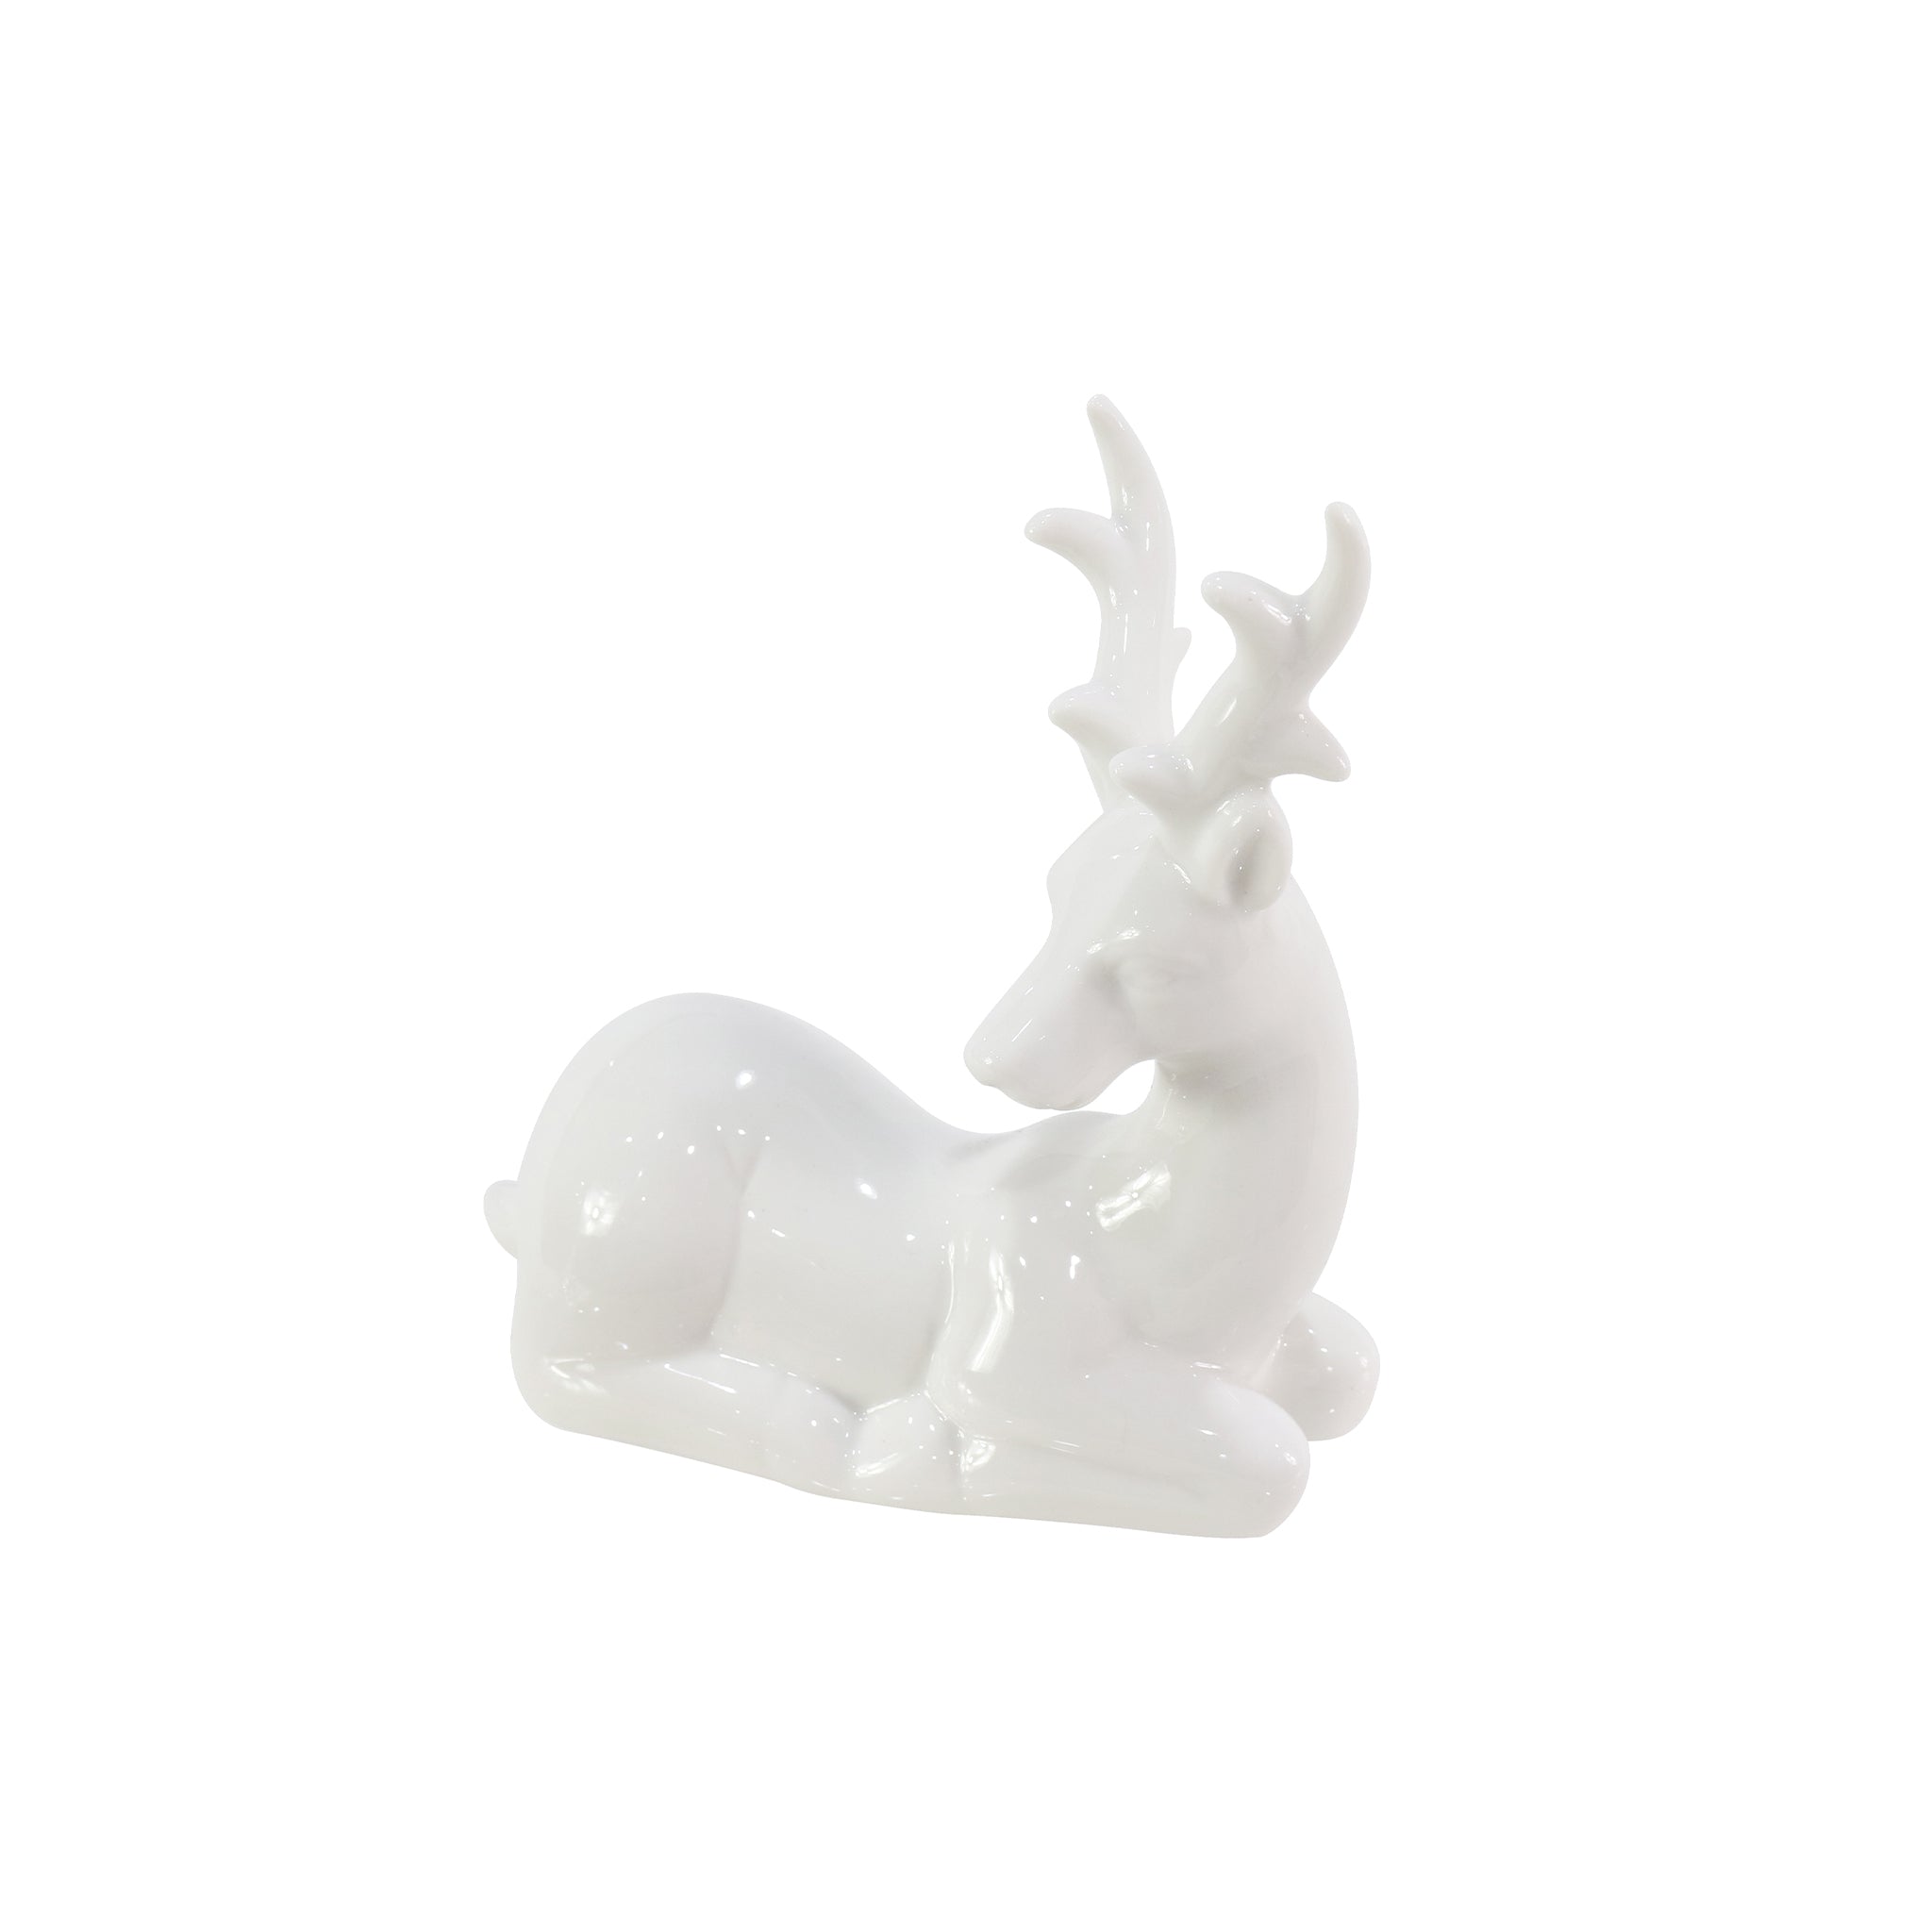 Porcelain Sitting Reindeer